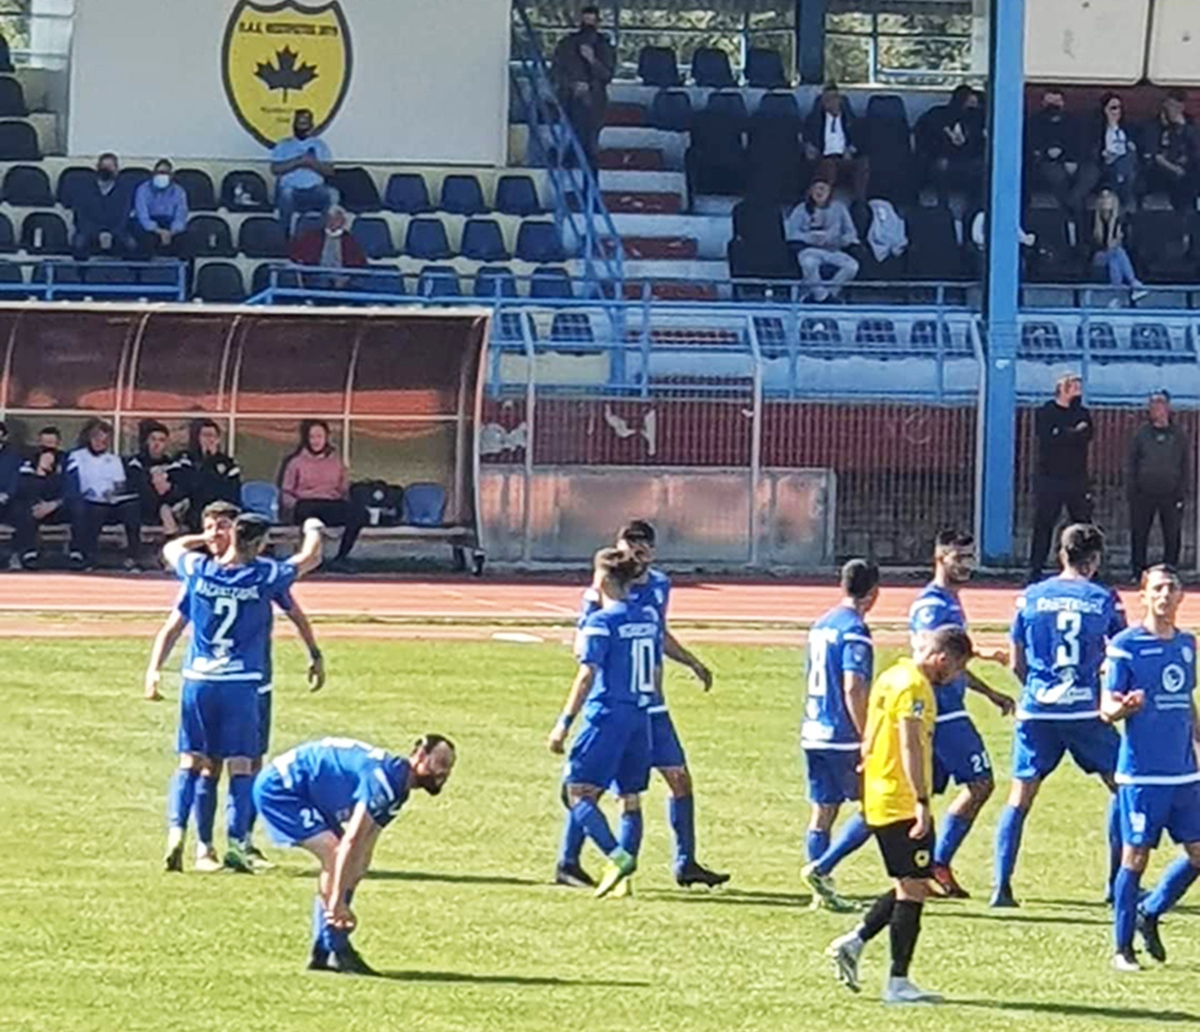  Δεύτερη νίκη για την ομάδα του Ανυφαντάκη  – Ο ΑΟΚ πέρασε με 1-0 από την έδρα του Θεσπρωτού